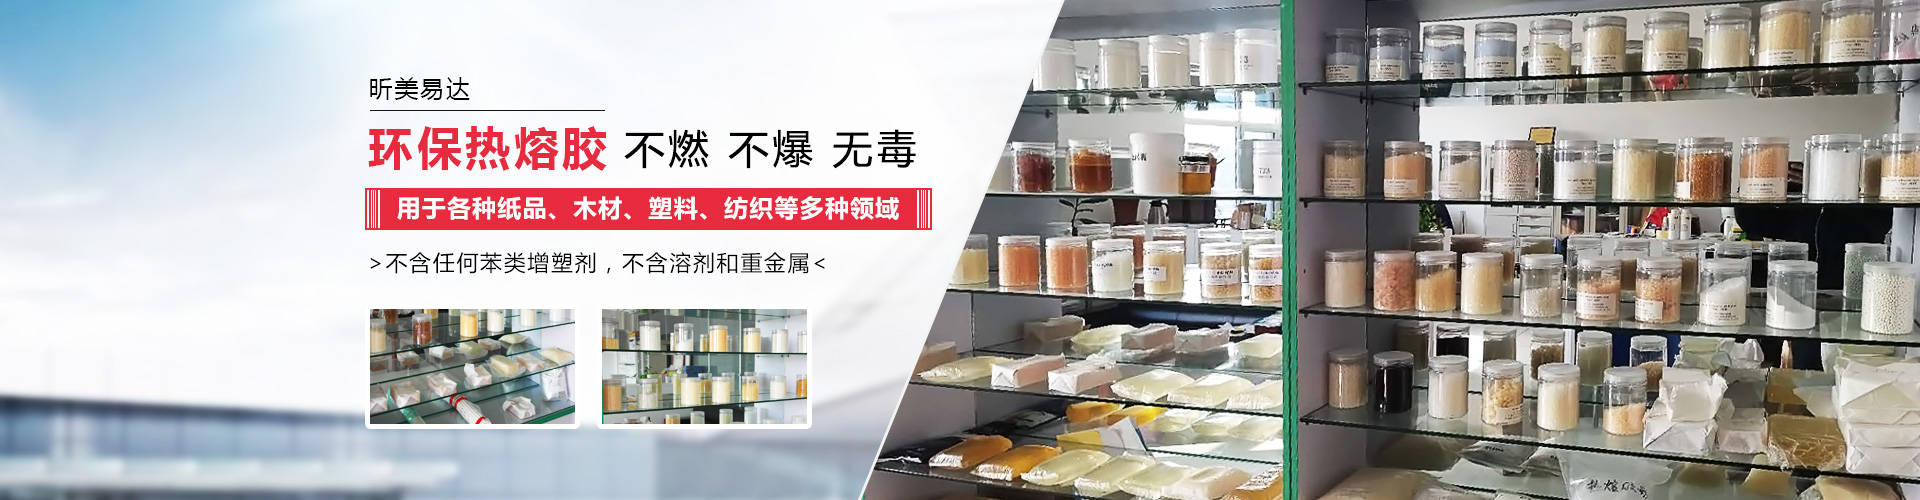 青岛星空官方网站入口专业生产热熔胶,粘合剂等系列产品.